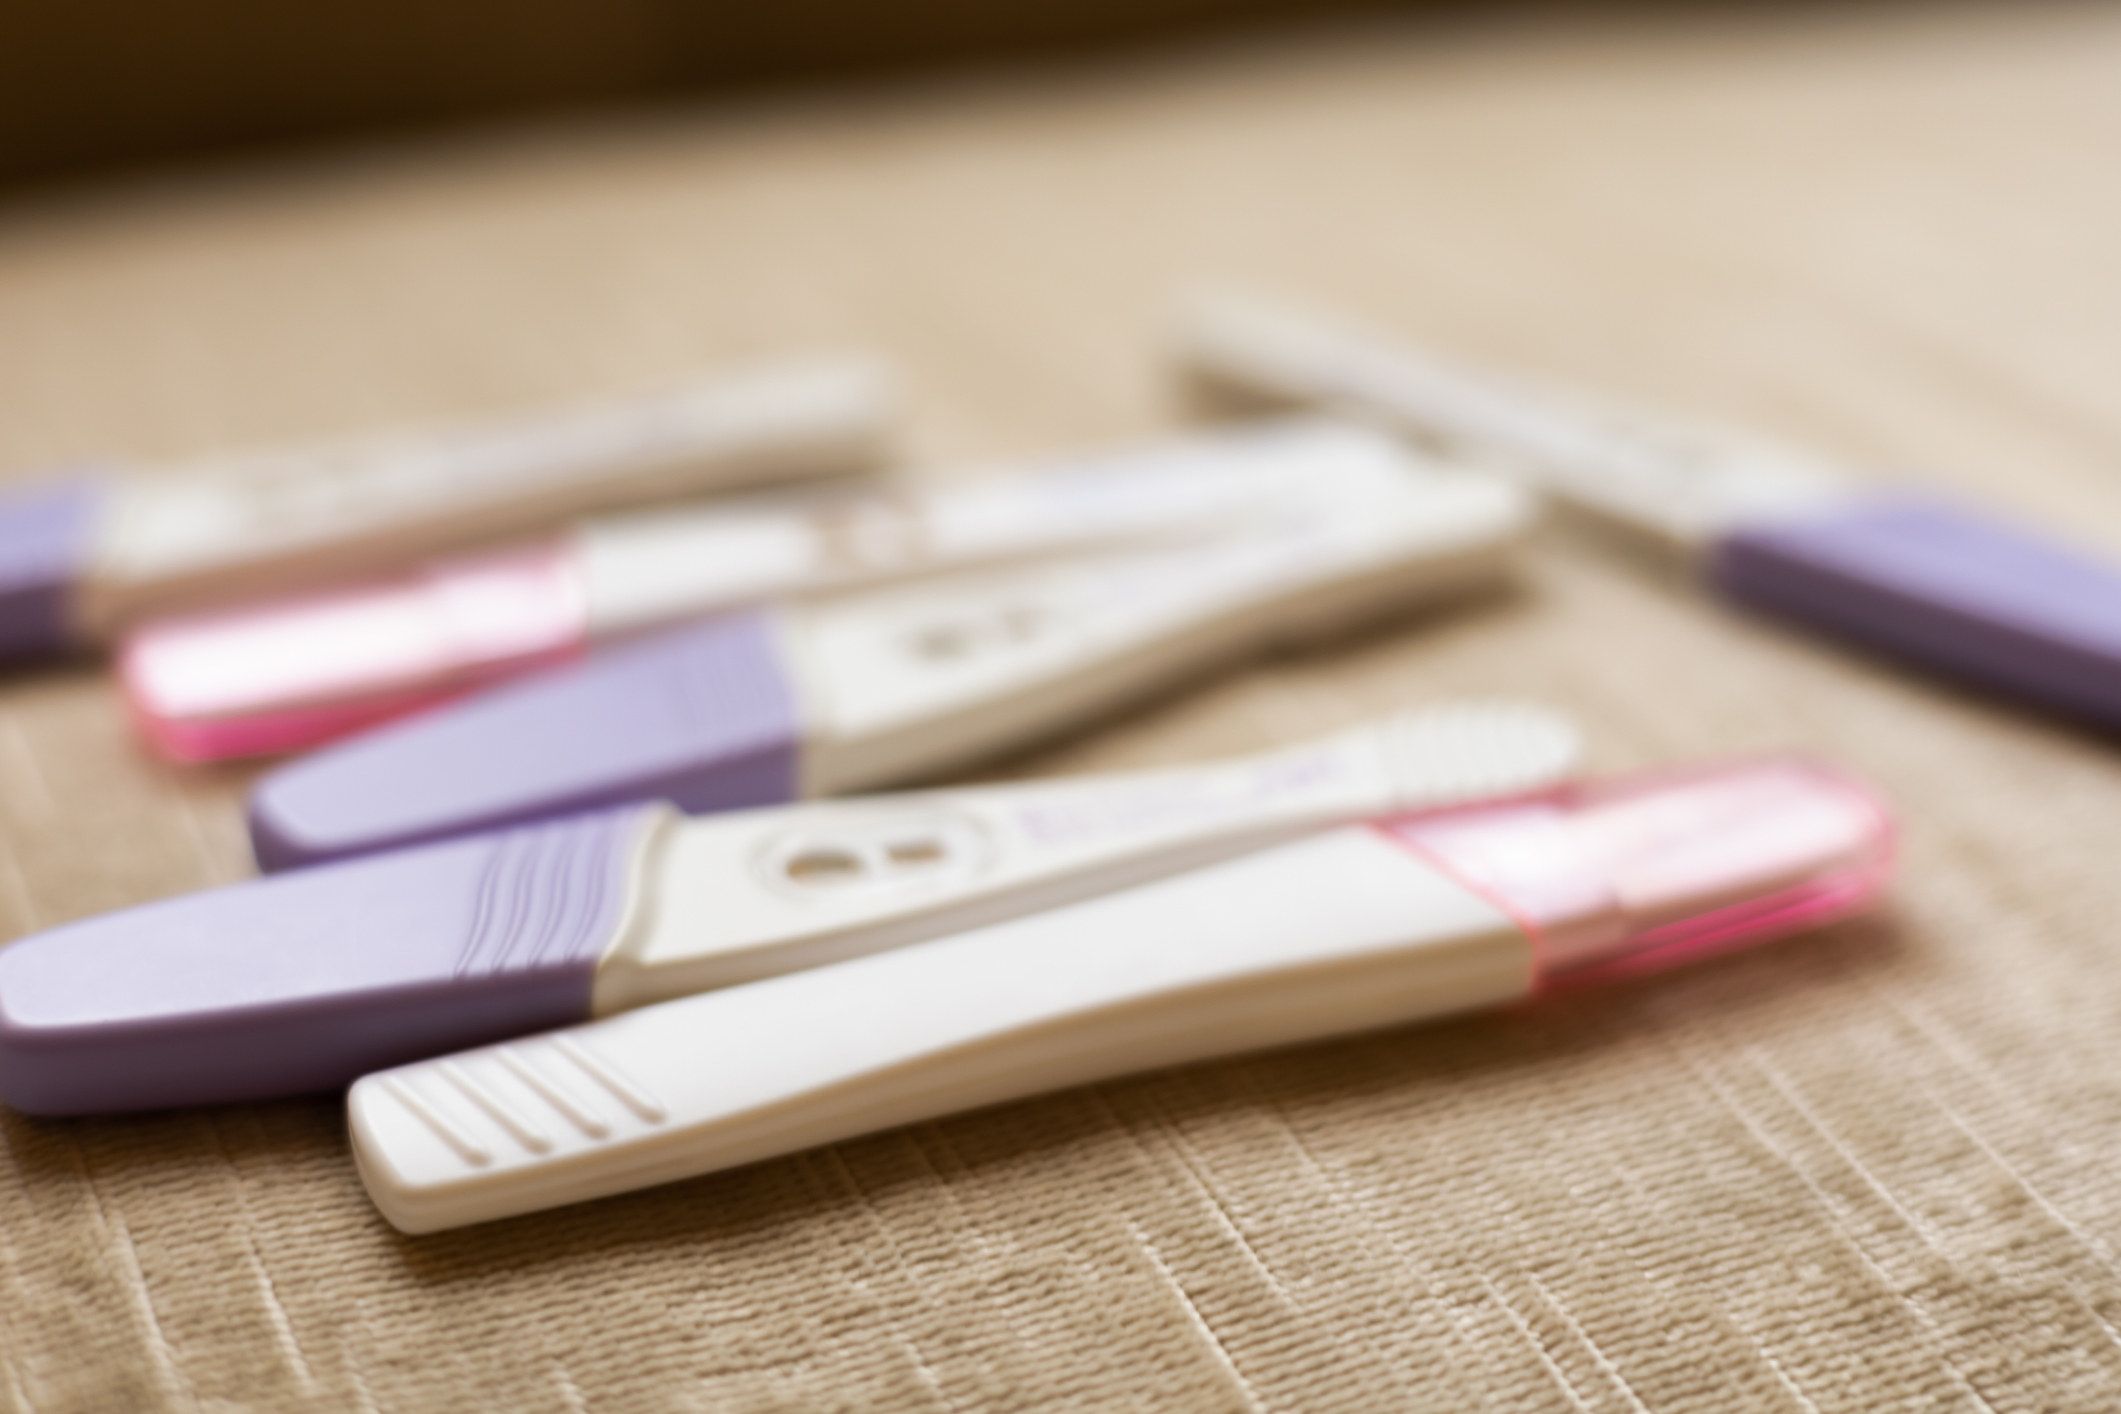 Various pregnancy tests